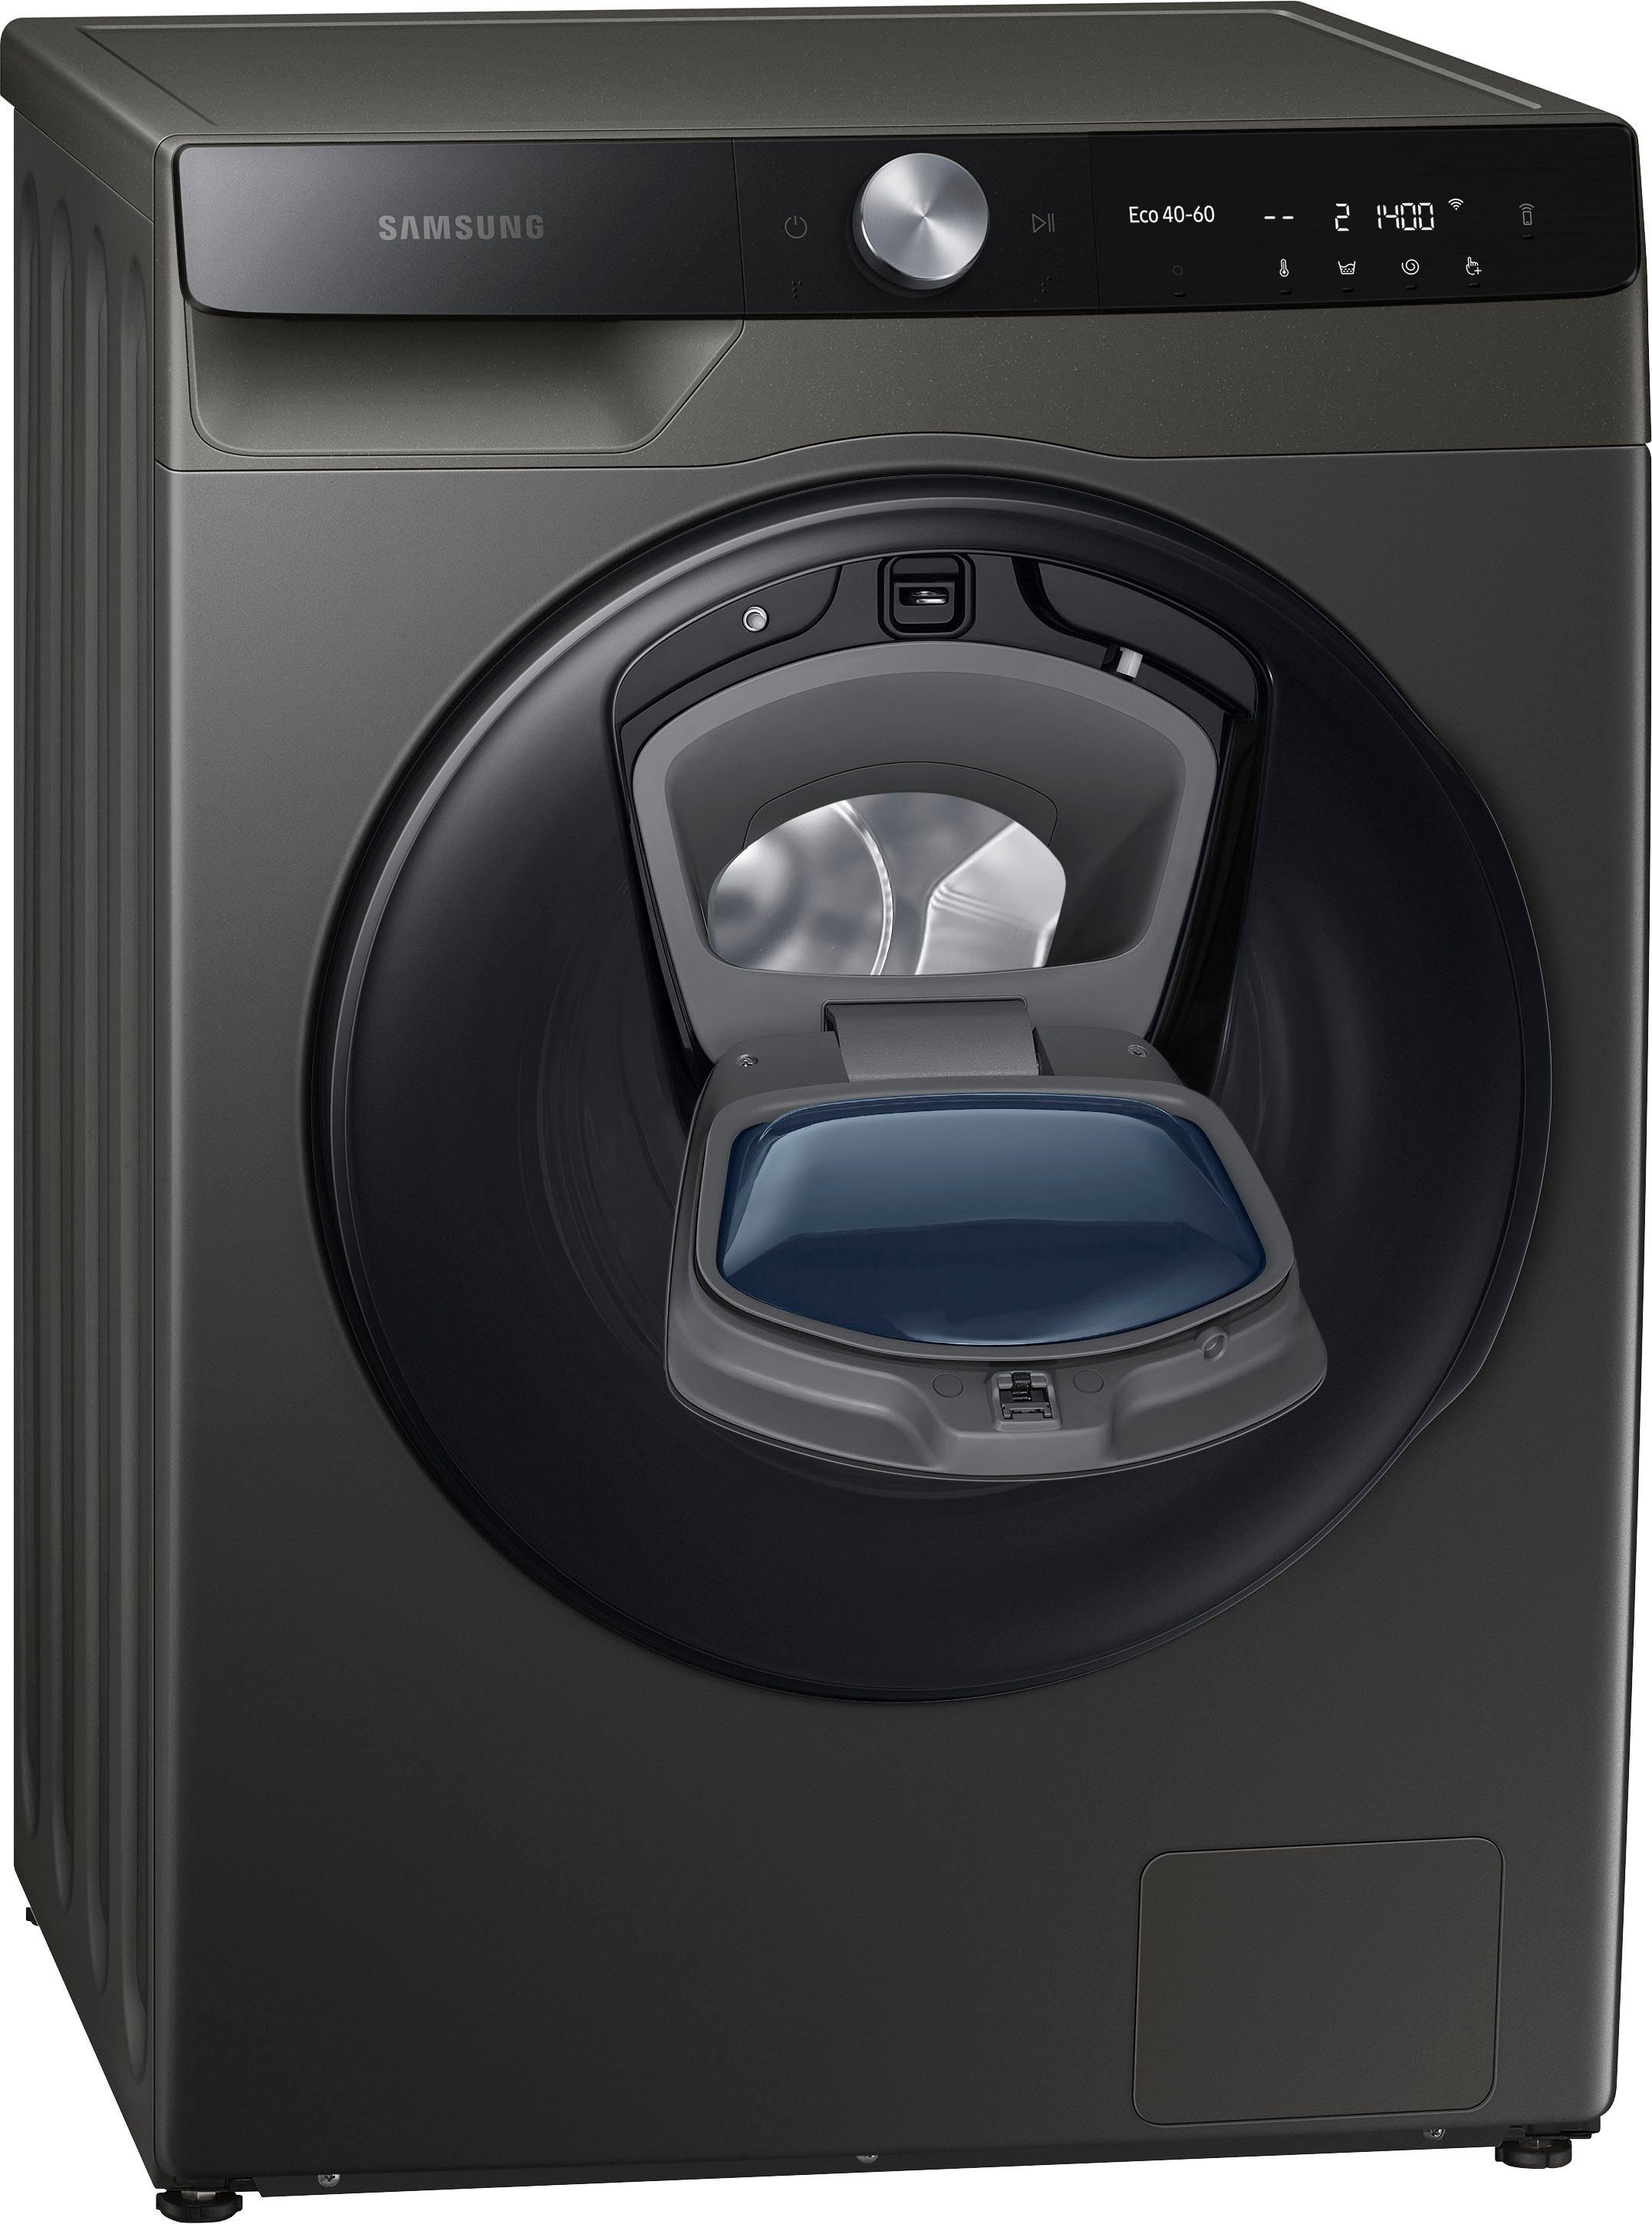 Beliebte Artikel diese Woche Samsung Waschtrockner WD7500T WD90T754ABX, 9 1400 6 QuickDrive kg, U/min, kg